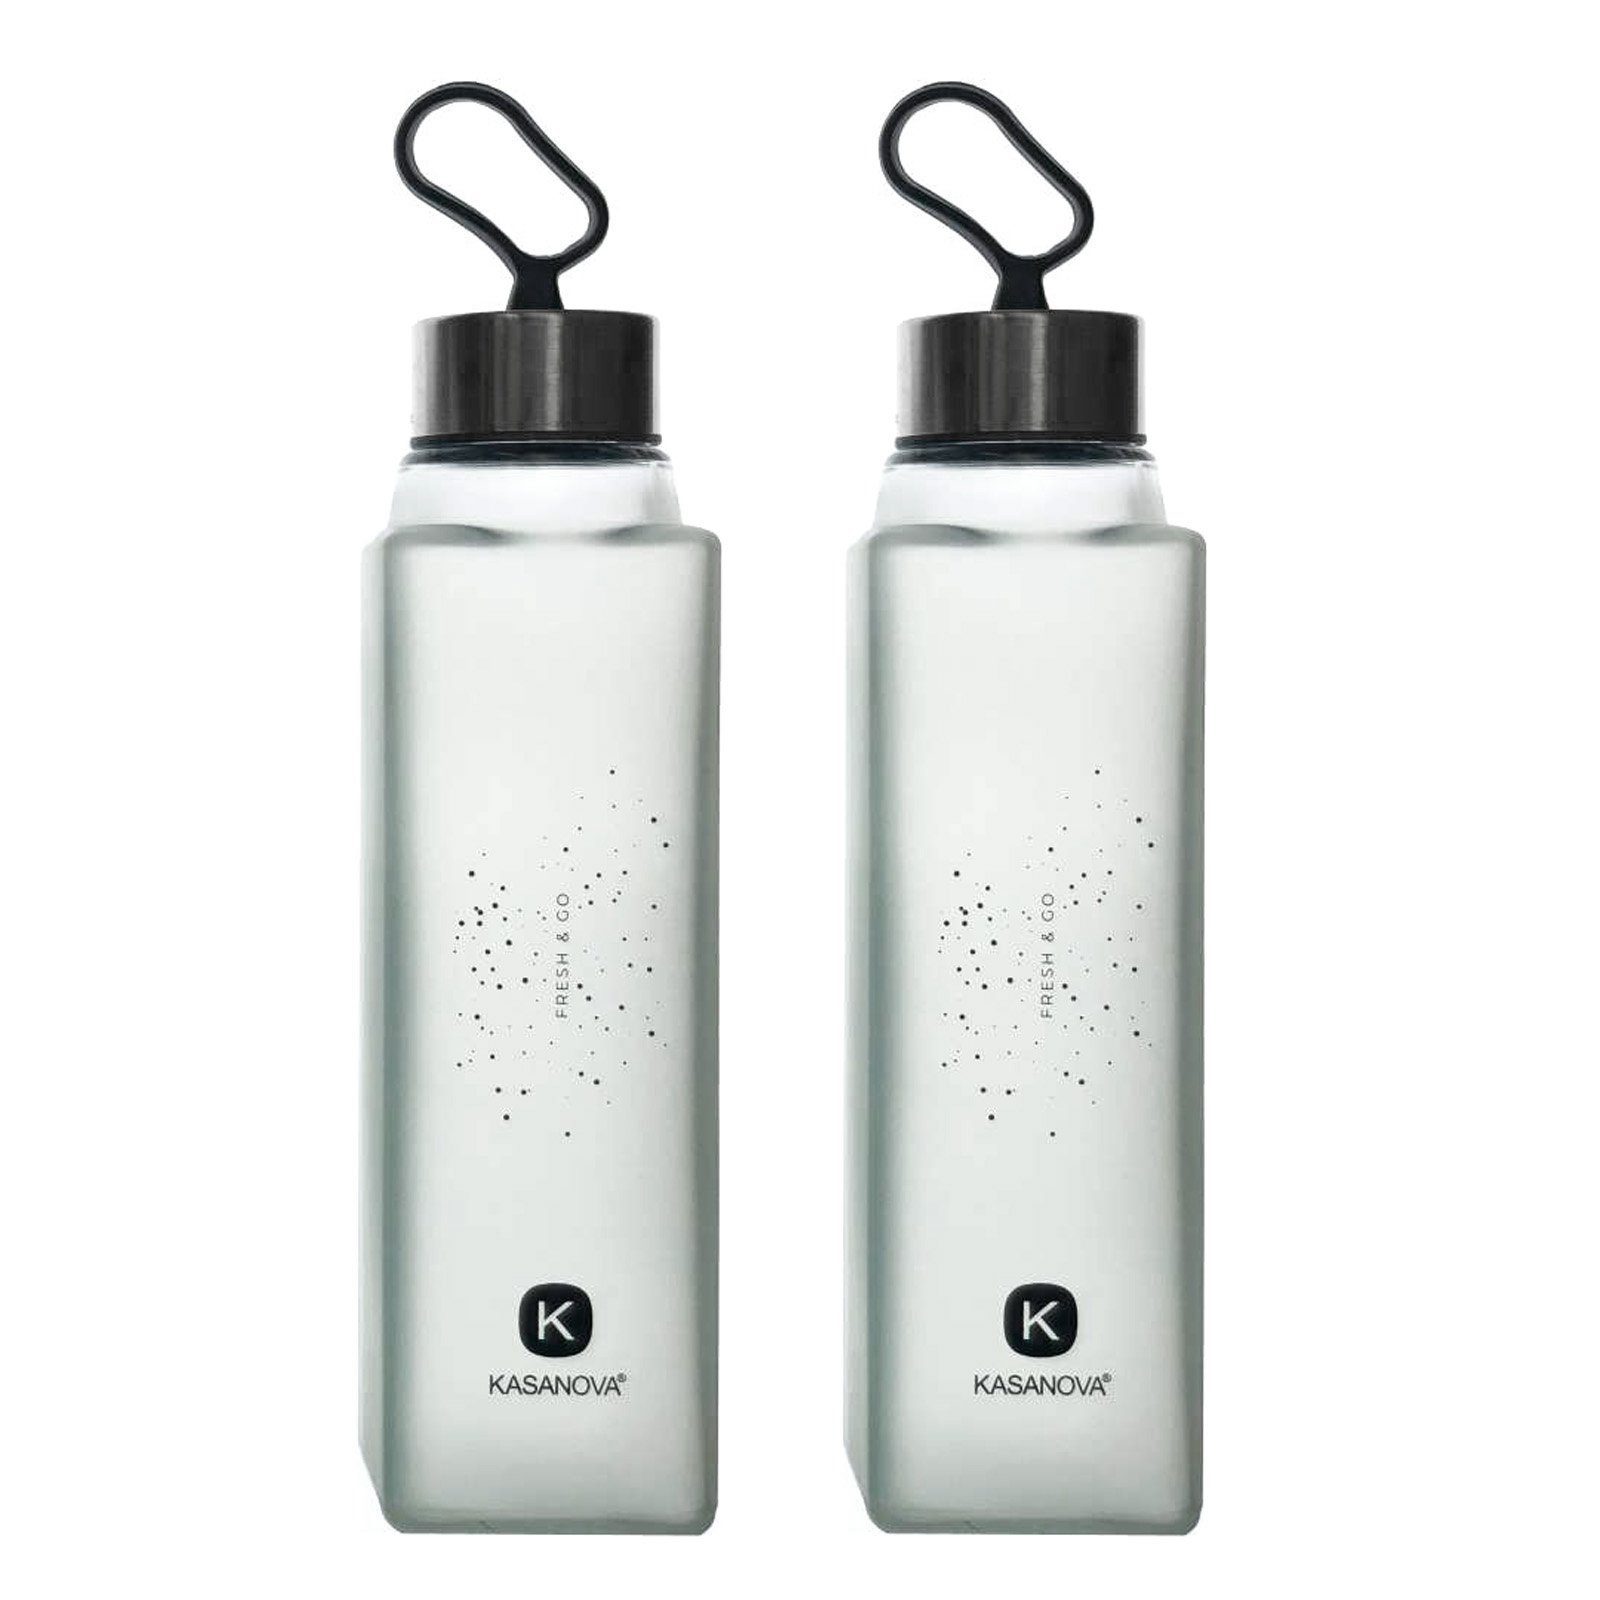 KASANOVA Trinkflasche 2er Set PURE Wasserflasche Glas Premium Grau Auslaufsicher Glasflasche Wiederverwendbar Robust Indoor Outdoor, 420ml, mit Silikonschlaufe